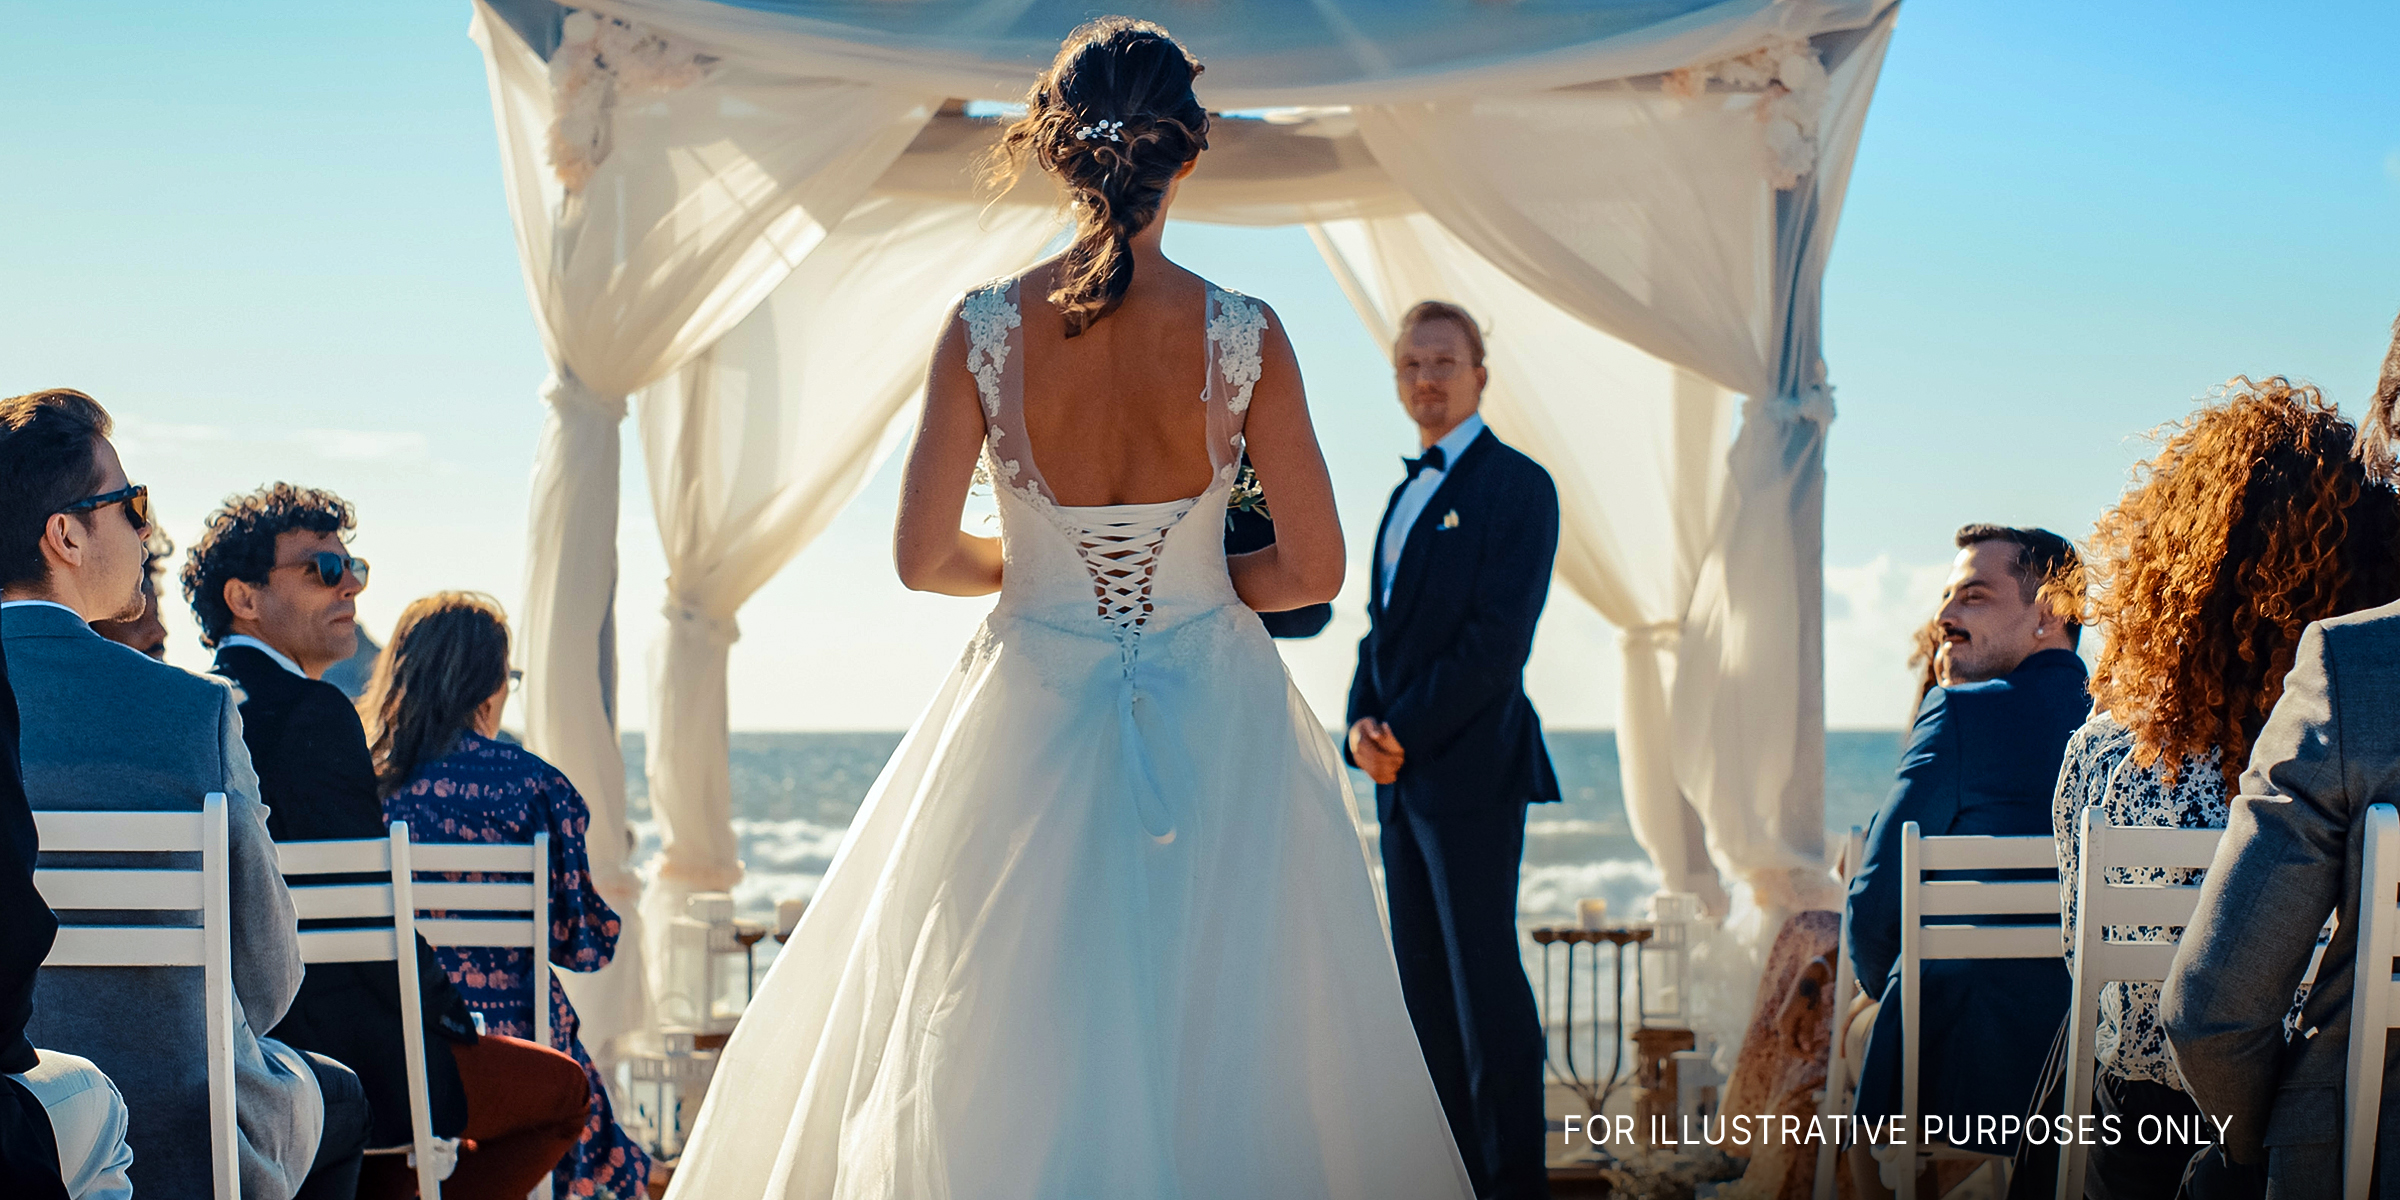 Une mariée descendant l'allée | Source : Shutterstock